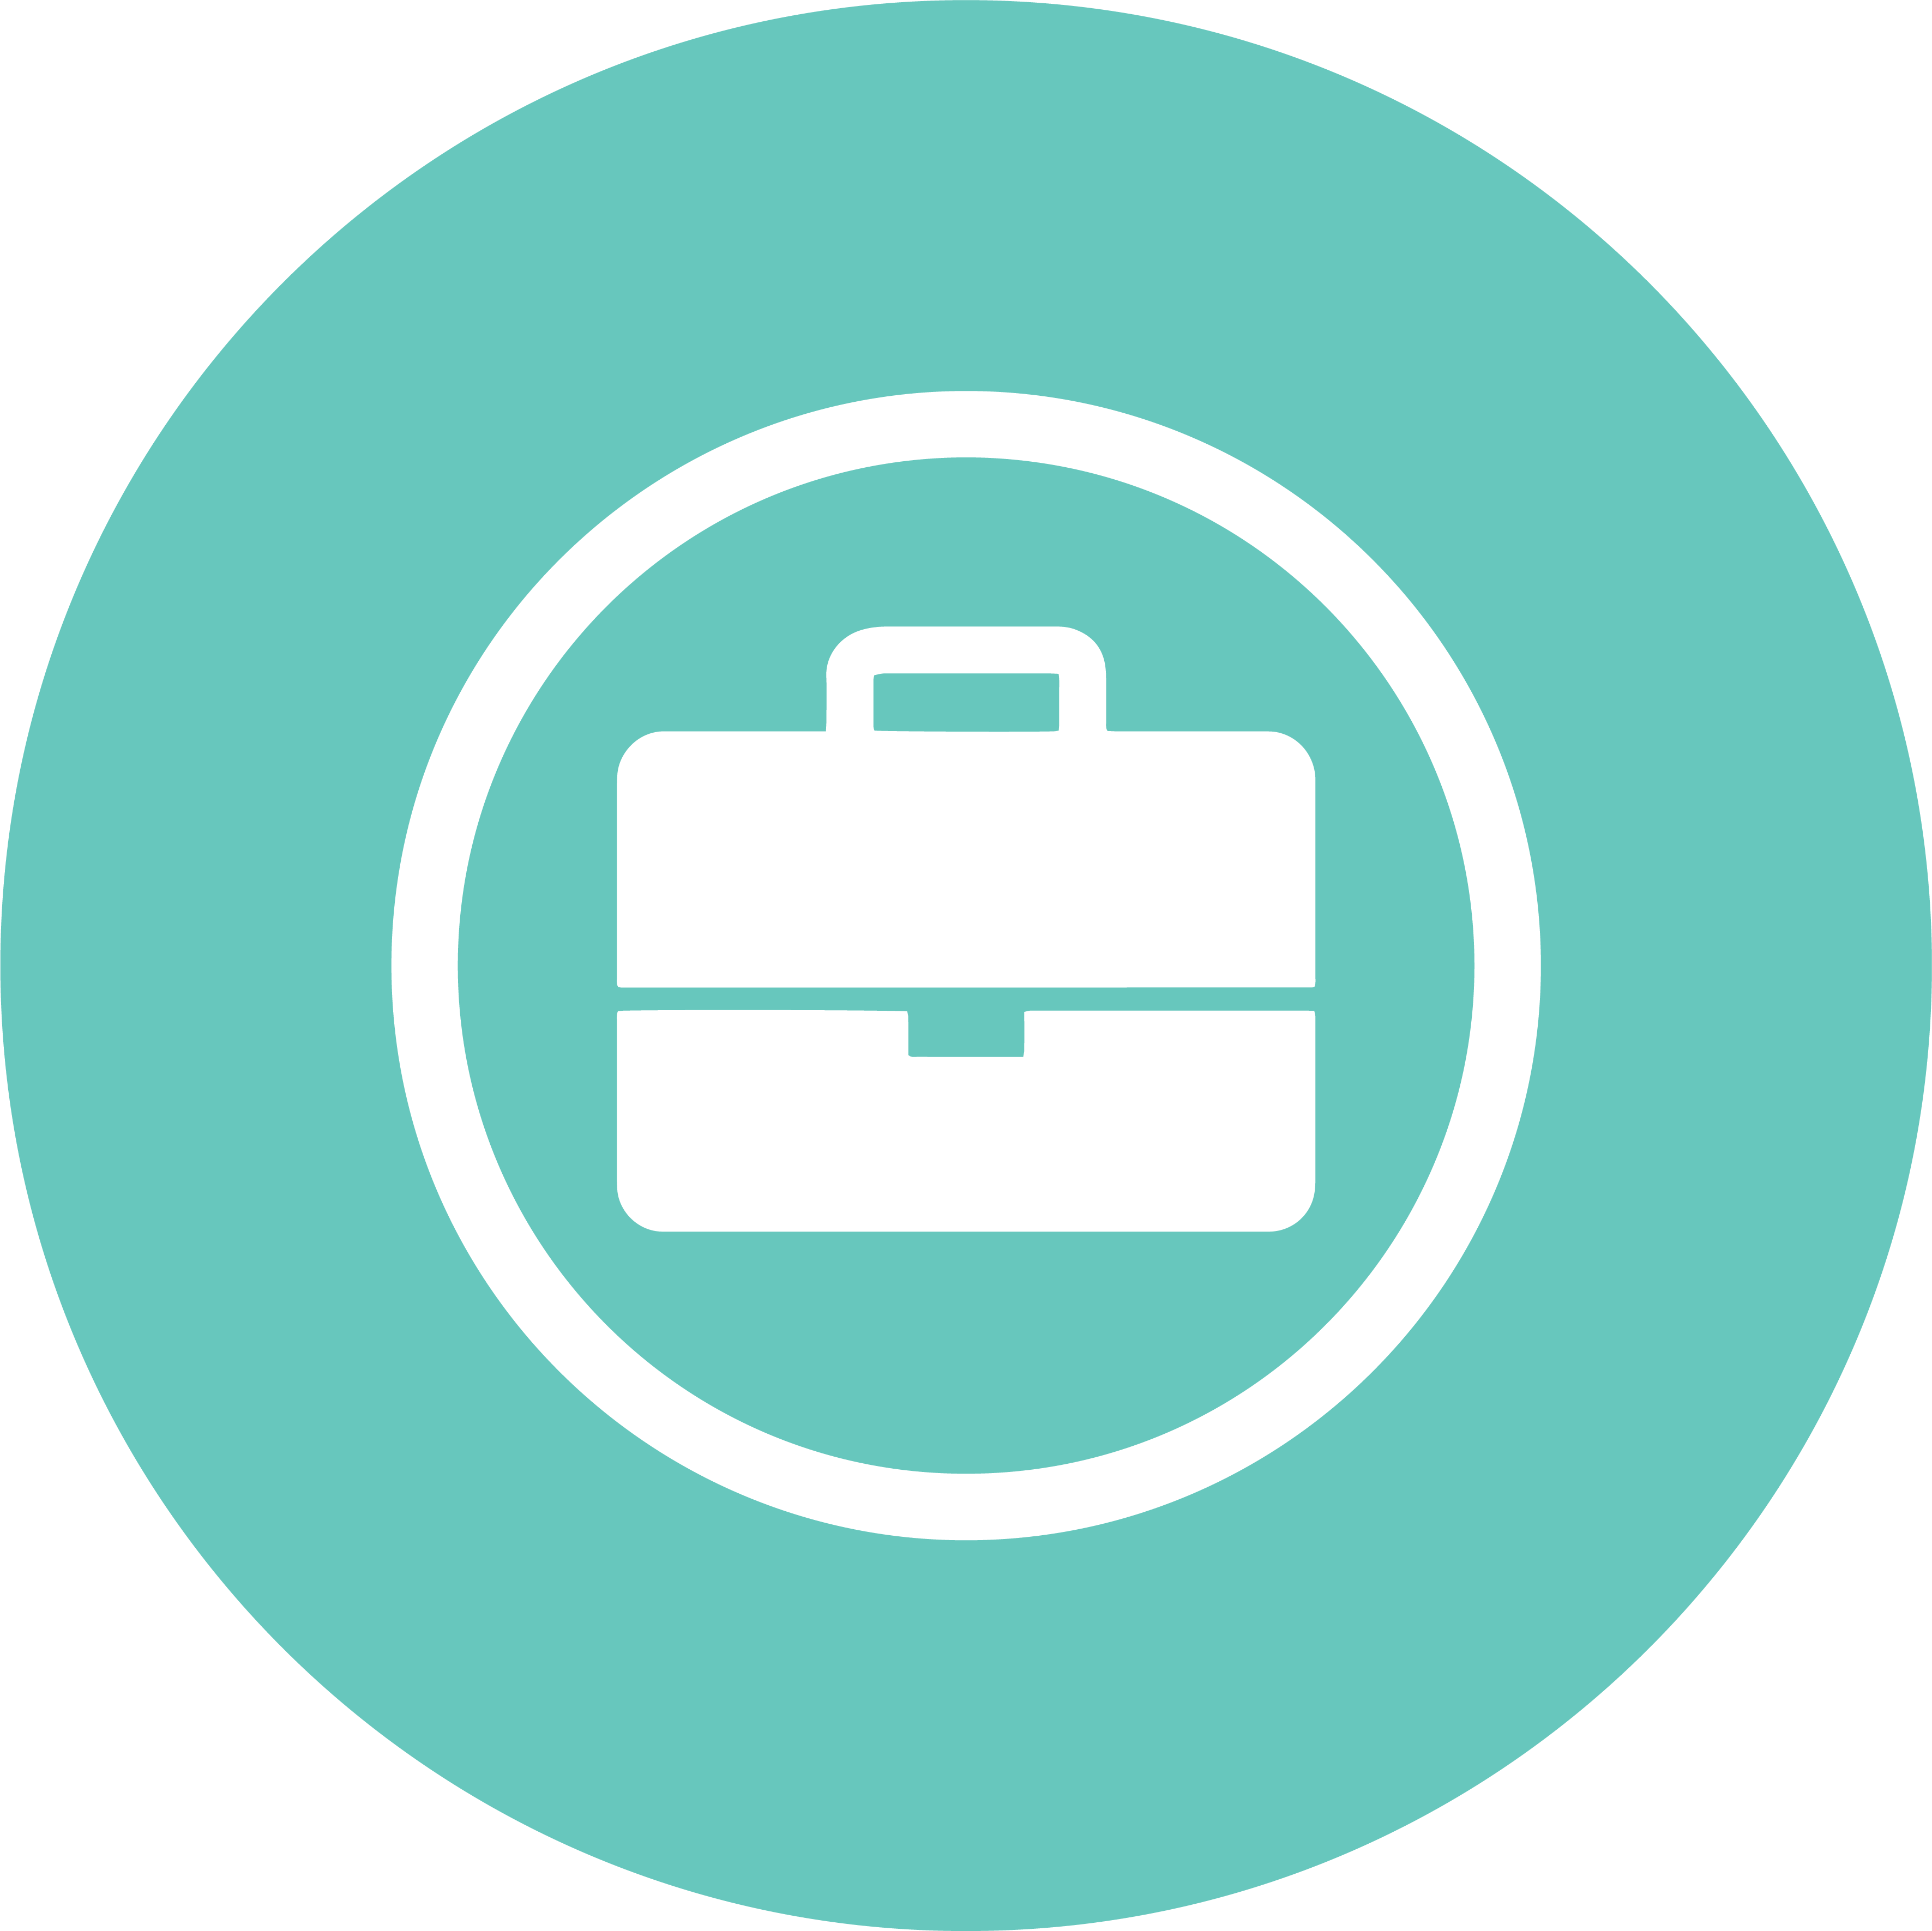 Briefcase icon representing portability